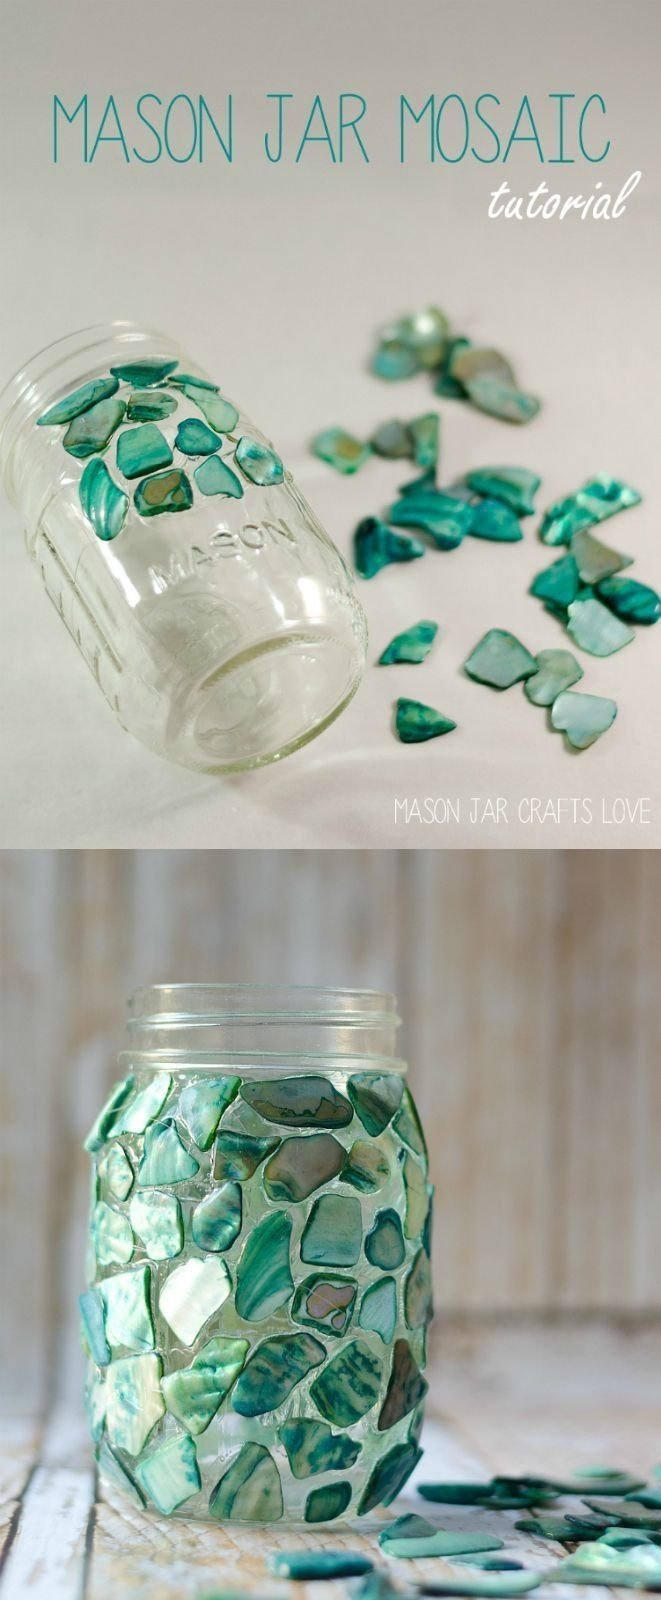 10 Pretty Craft Ideas With Mason Jars diy crafts mason jar craft ideas mason jar mosaic mosaic craft 2022